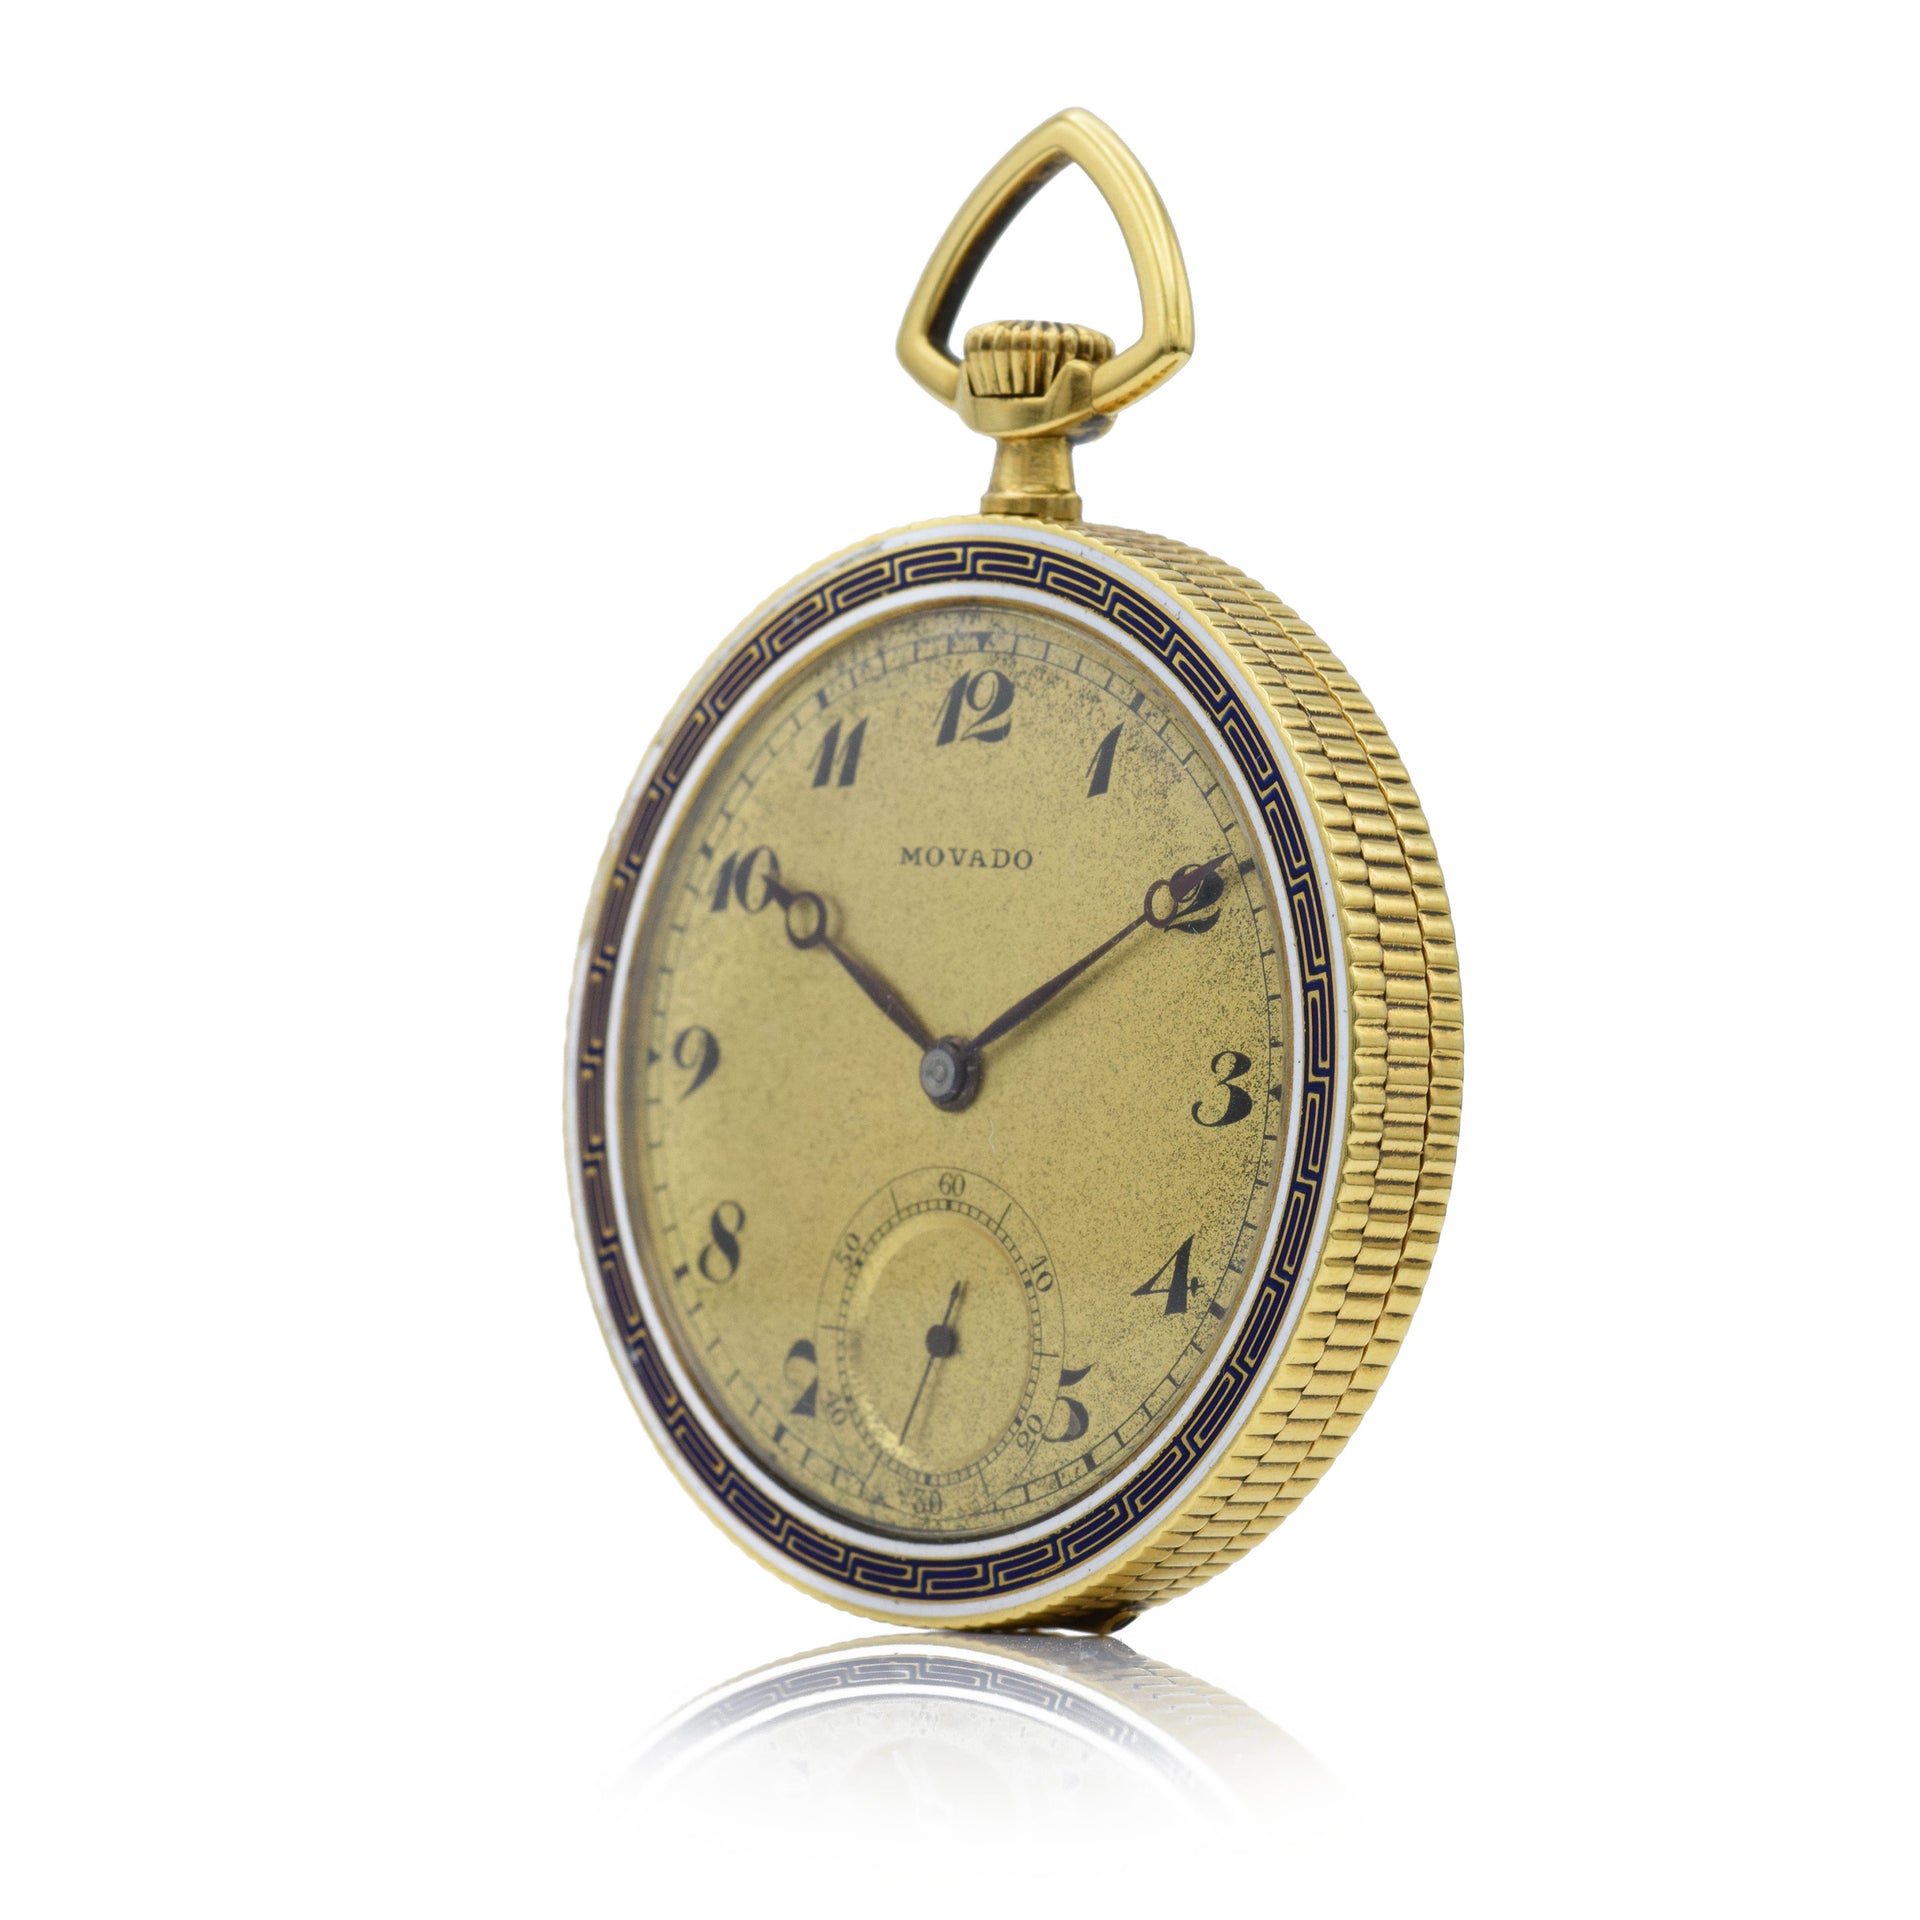 Vintage 1930s Movado Pocket Watch